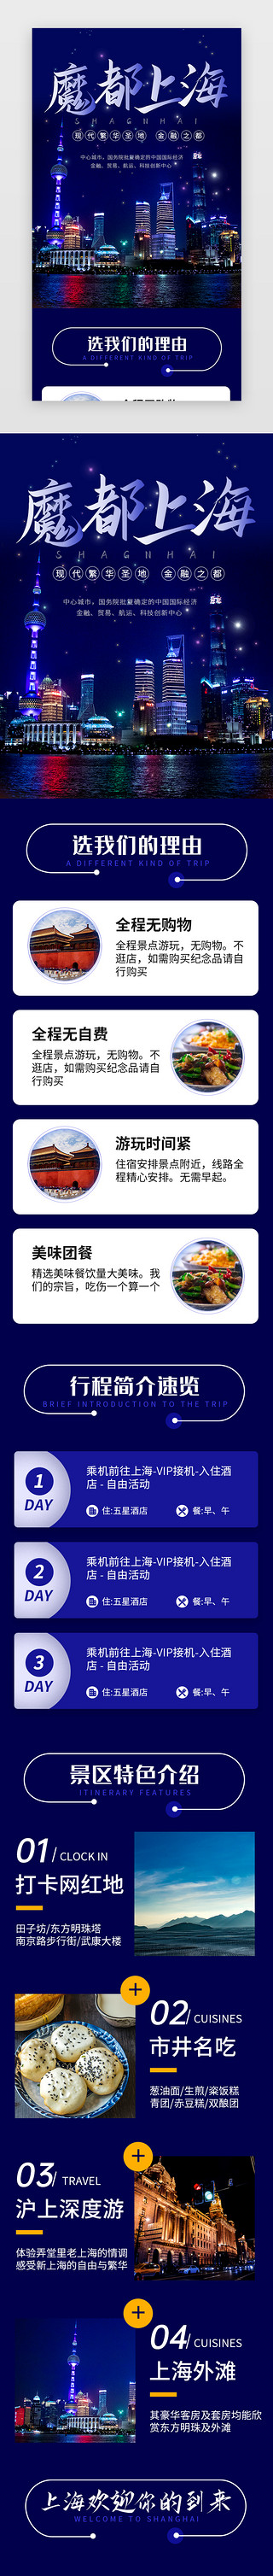 品牌介绍列表页UI设计素材_蓝色魔都上海旅行景点介绍H5长图海报